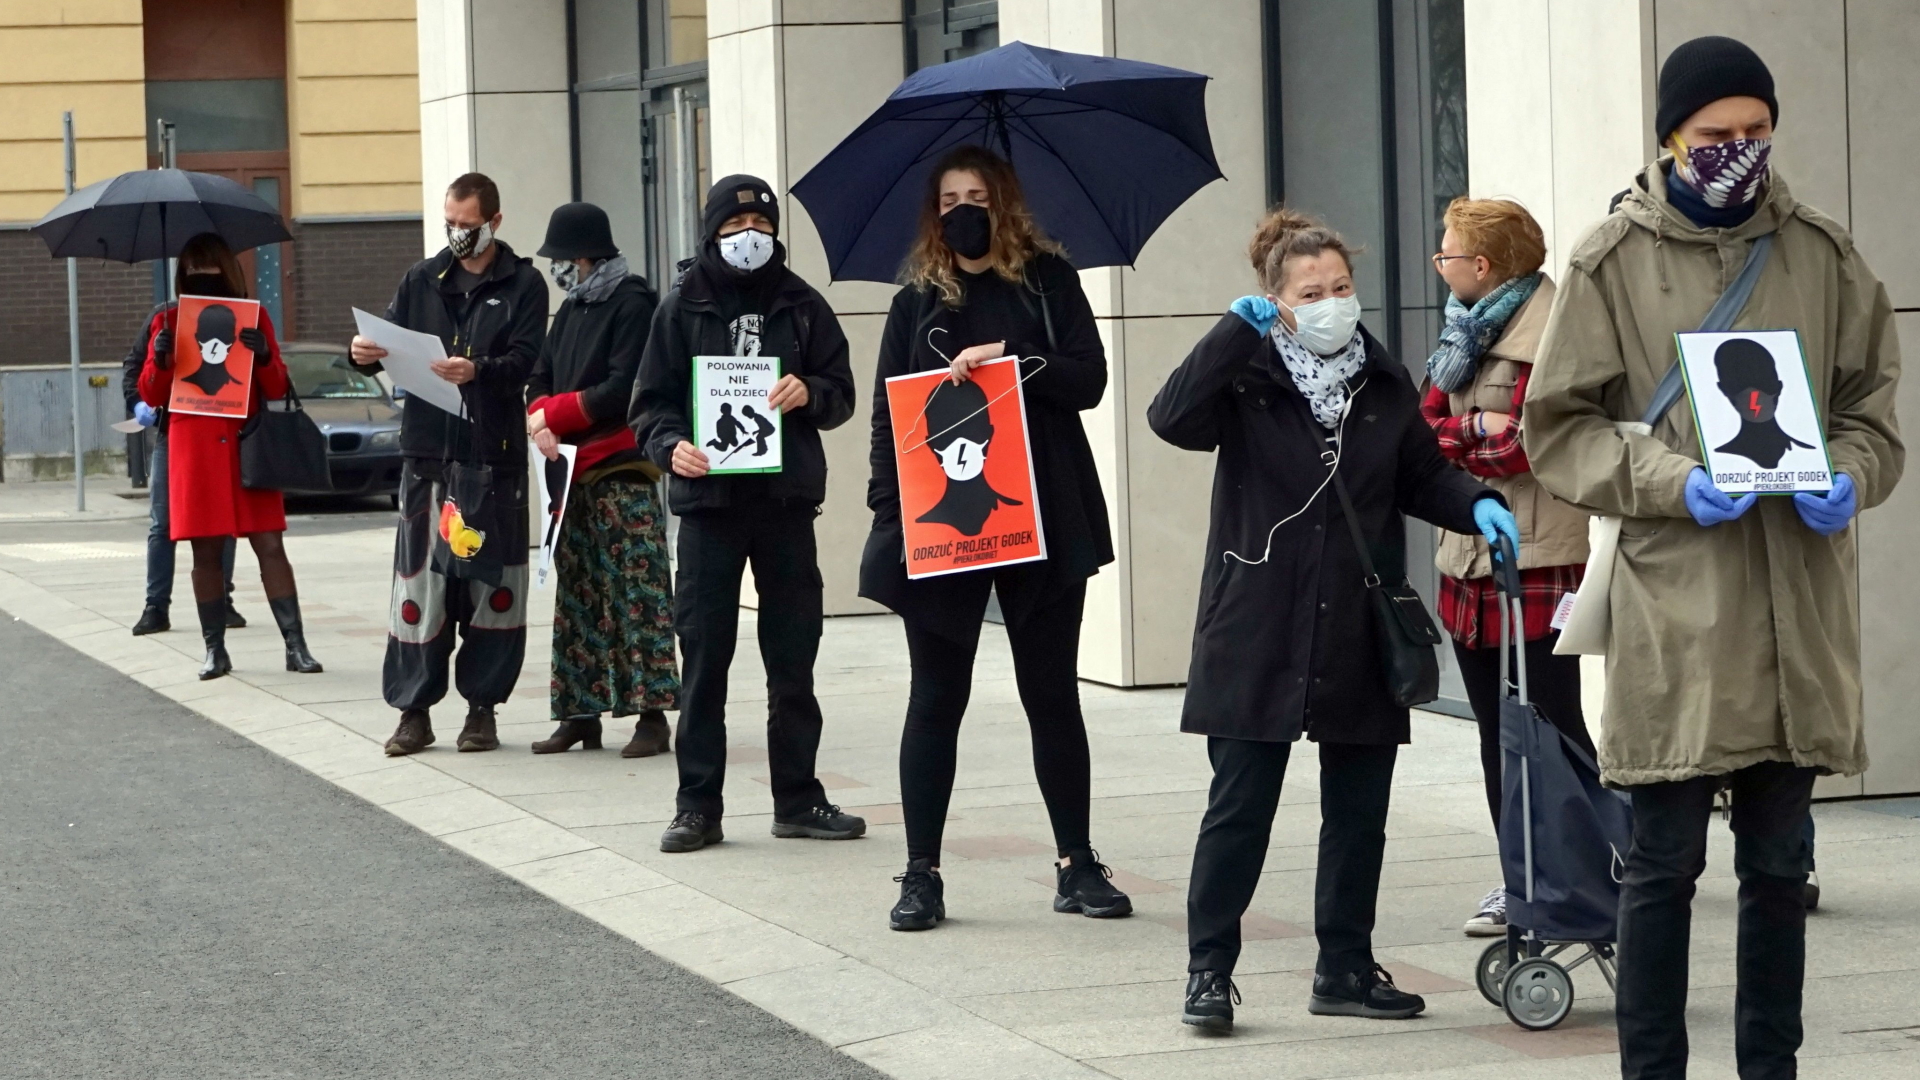 Demonstranten in Stettin protestieren im April 2020 mit schwarzen Schirmen gegen eine Verschärfung des Abtreibungsrechts in Polen | Marcin Bielecki/EPA-EFE/Shutters